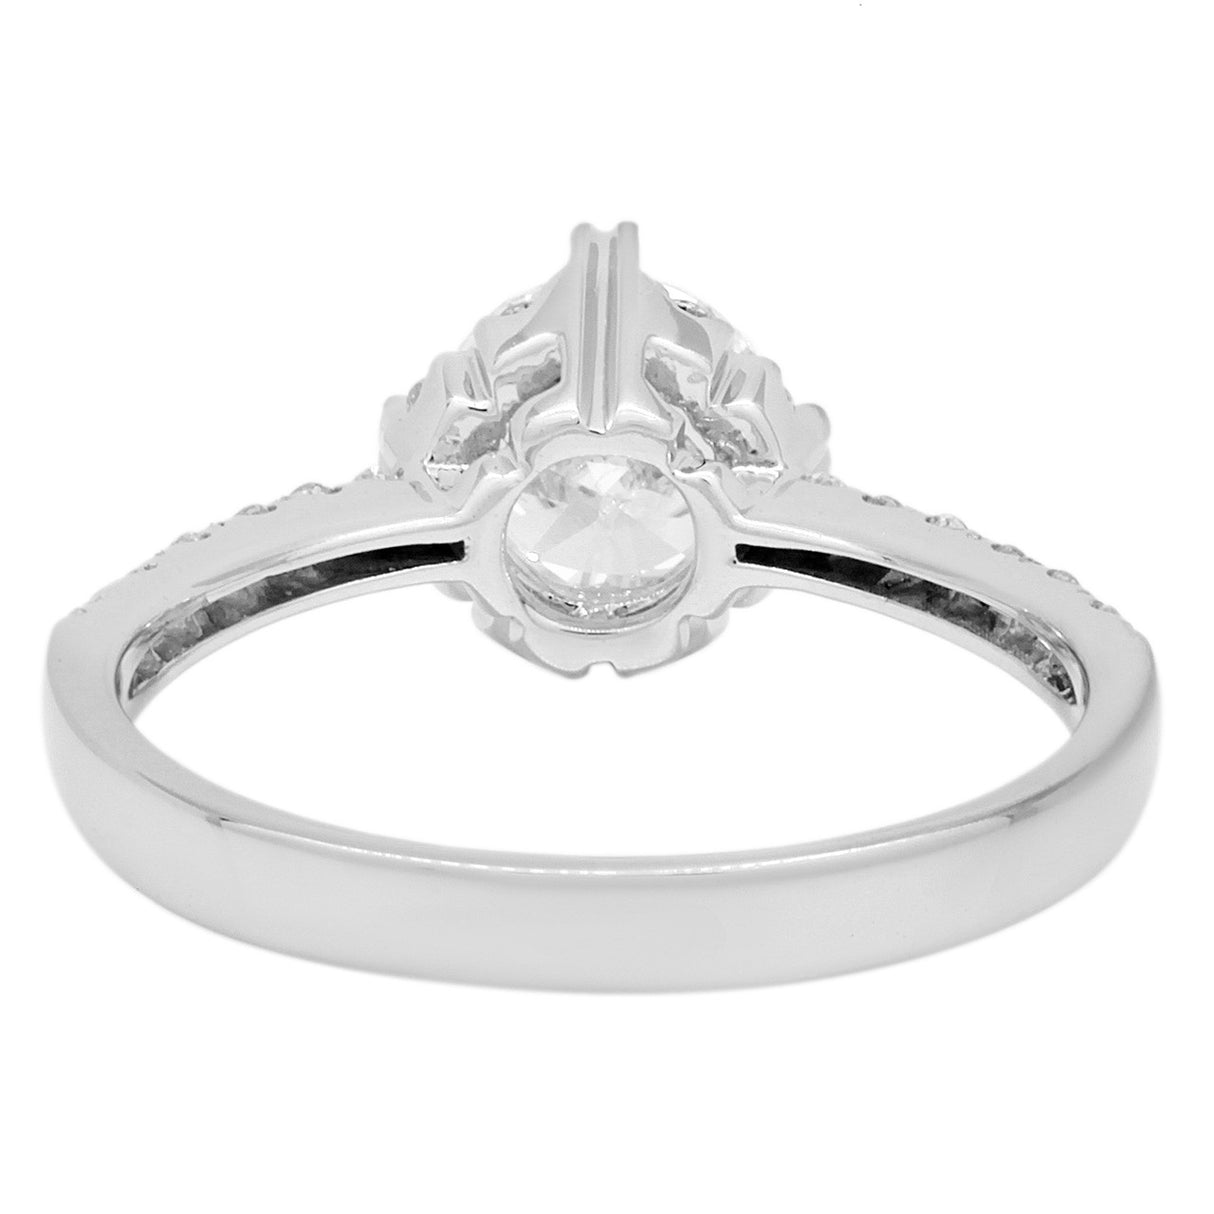 18K White Gold 1.01 Carat Diamond Ring